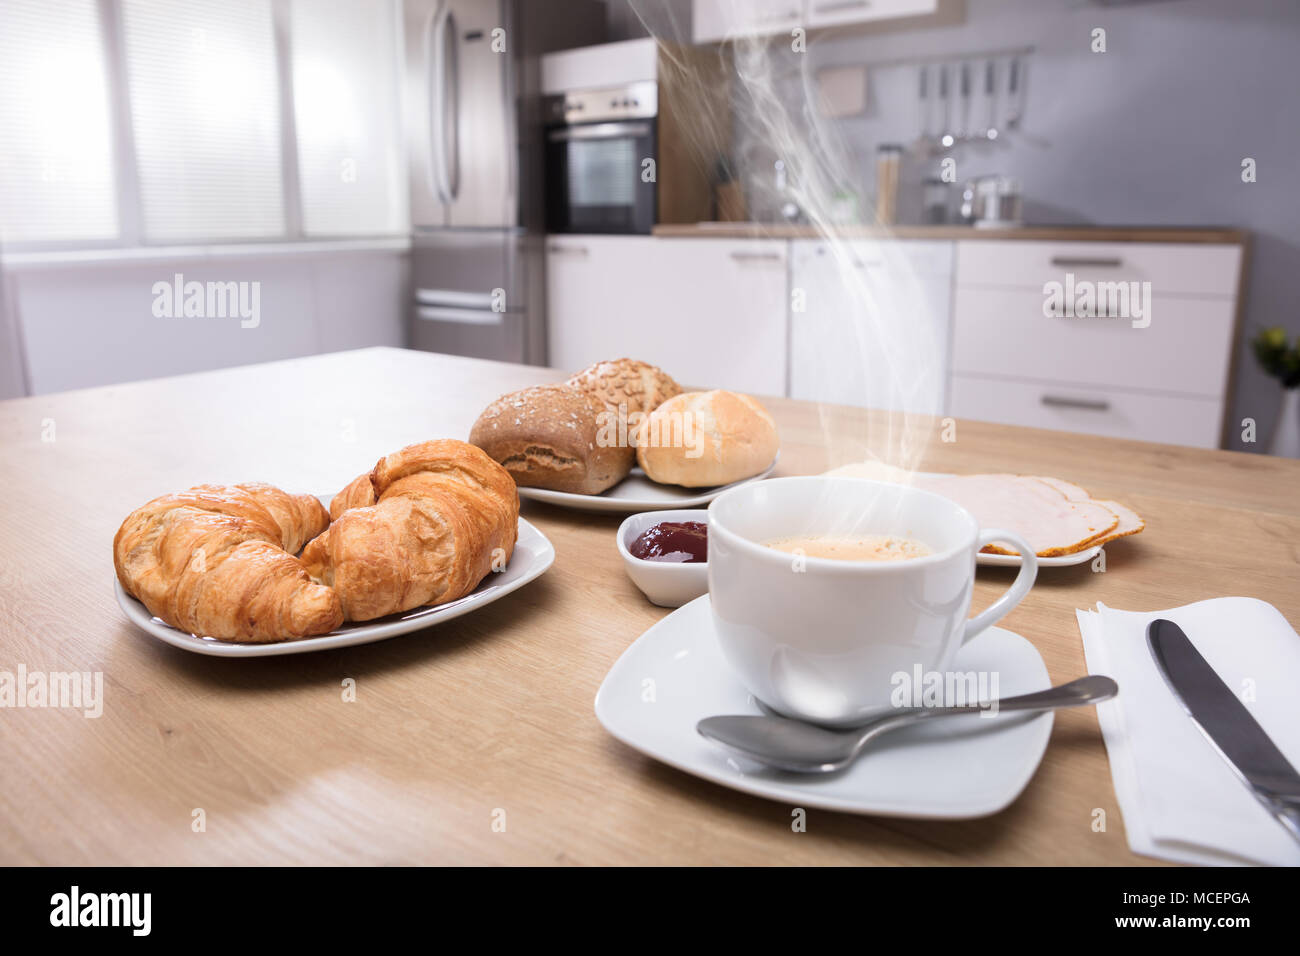 In der Nähe von Croissants und heiße Tasse Kaffee auf hölzernen Schreibtisch Stockfoto